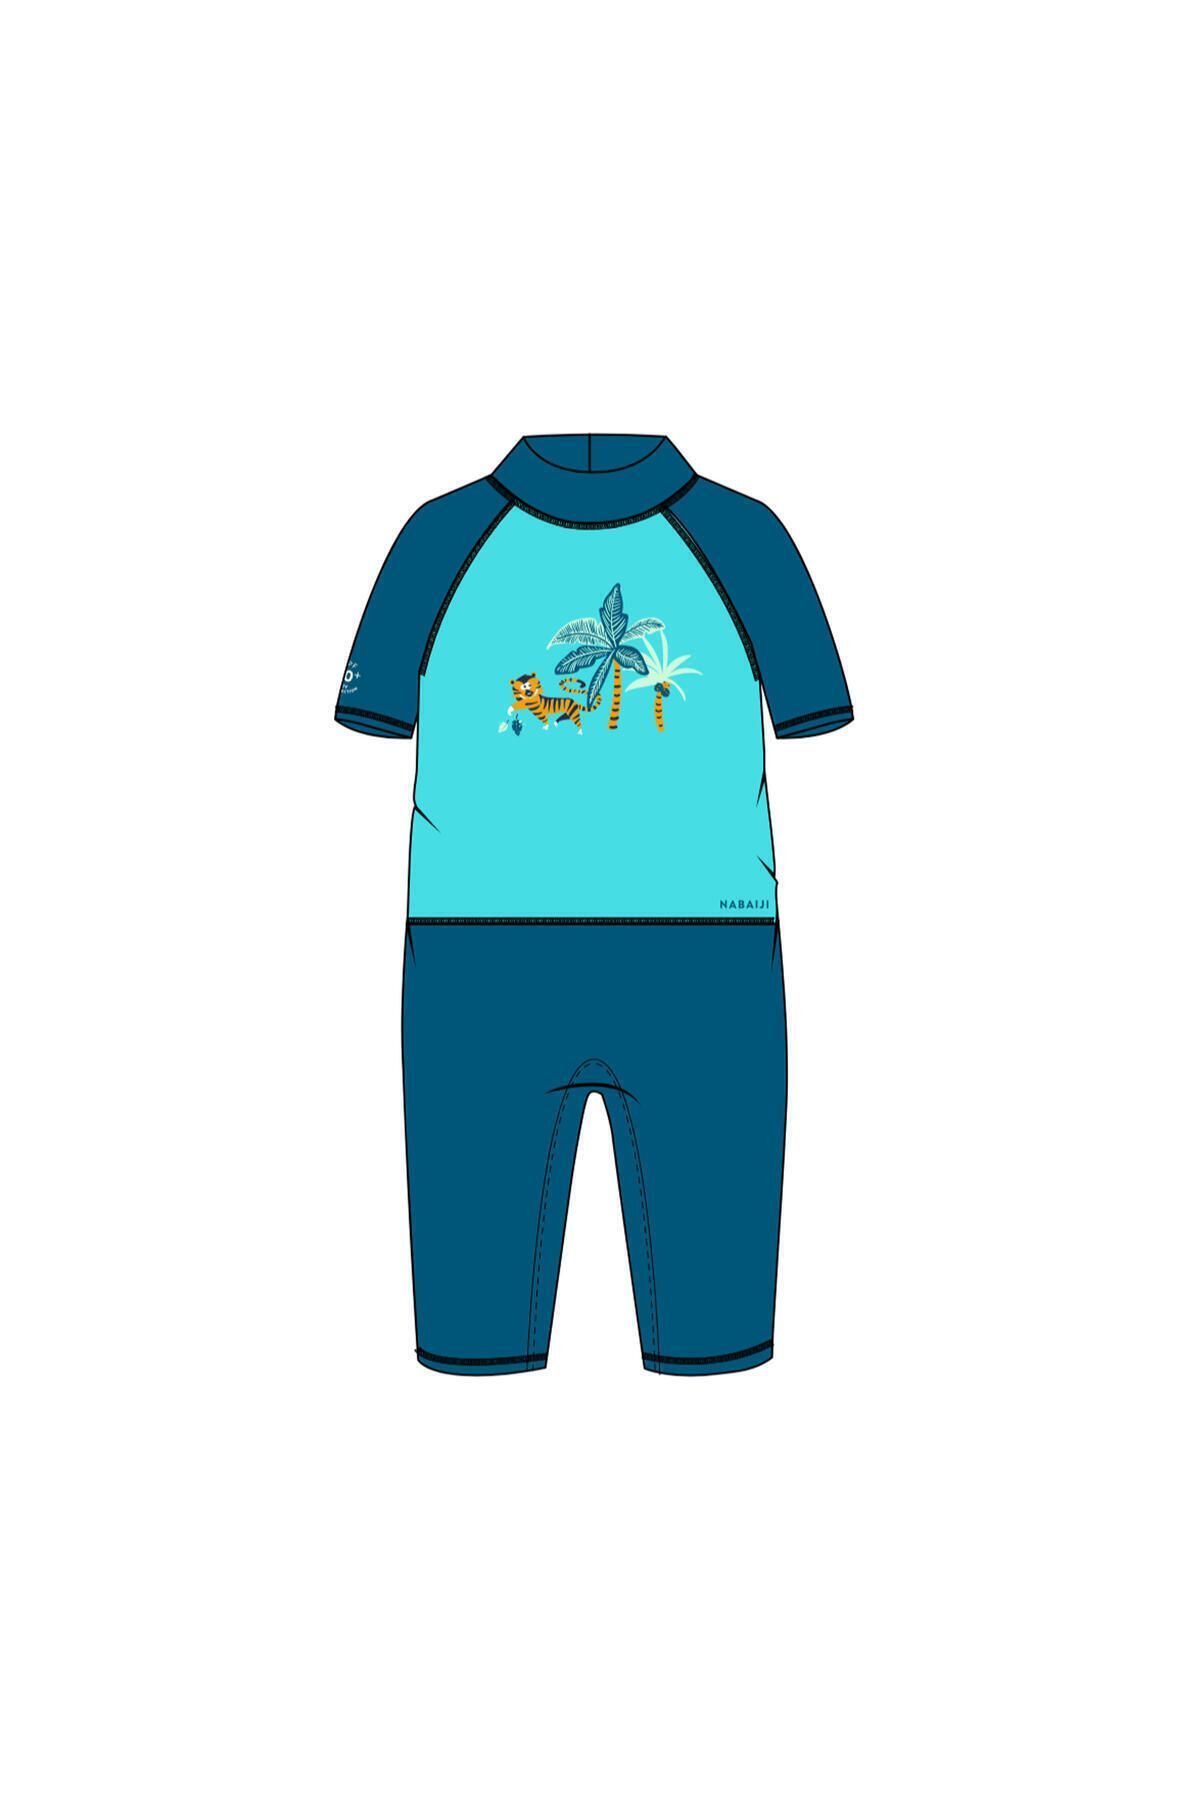 Decathlon Bebek / Çocuk Uv Korumalı Kısa Kollu Wetsuit - Baskılı / Mavi